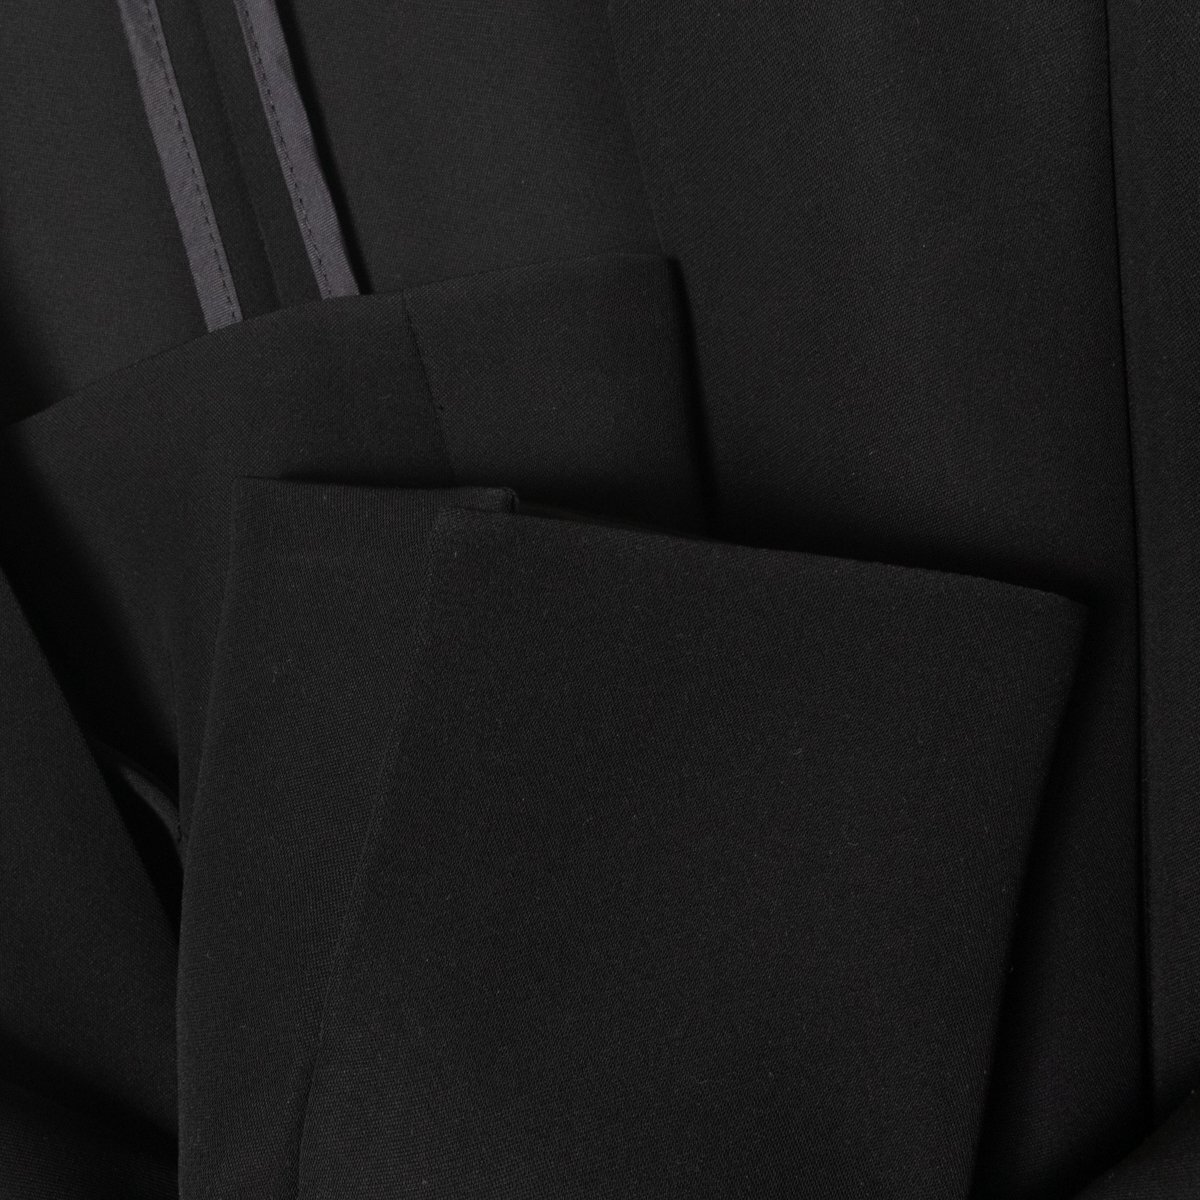 PINKY&DIANNE ピンキーアンドダイアン ノーカラージャケット 羽織 無地 36 ポリエステル100% ブラック 黒 綺麗め カジュアル フォーマル_画像5